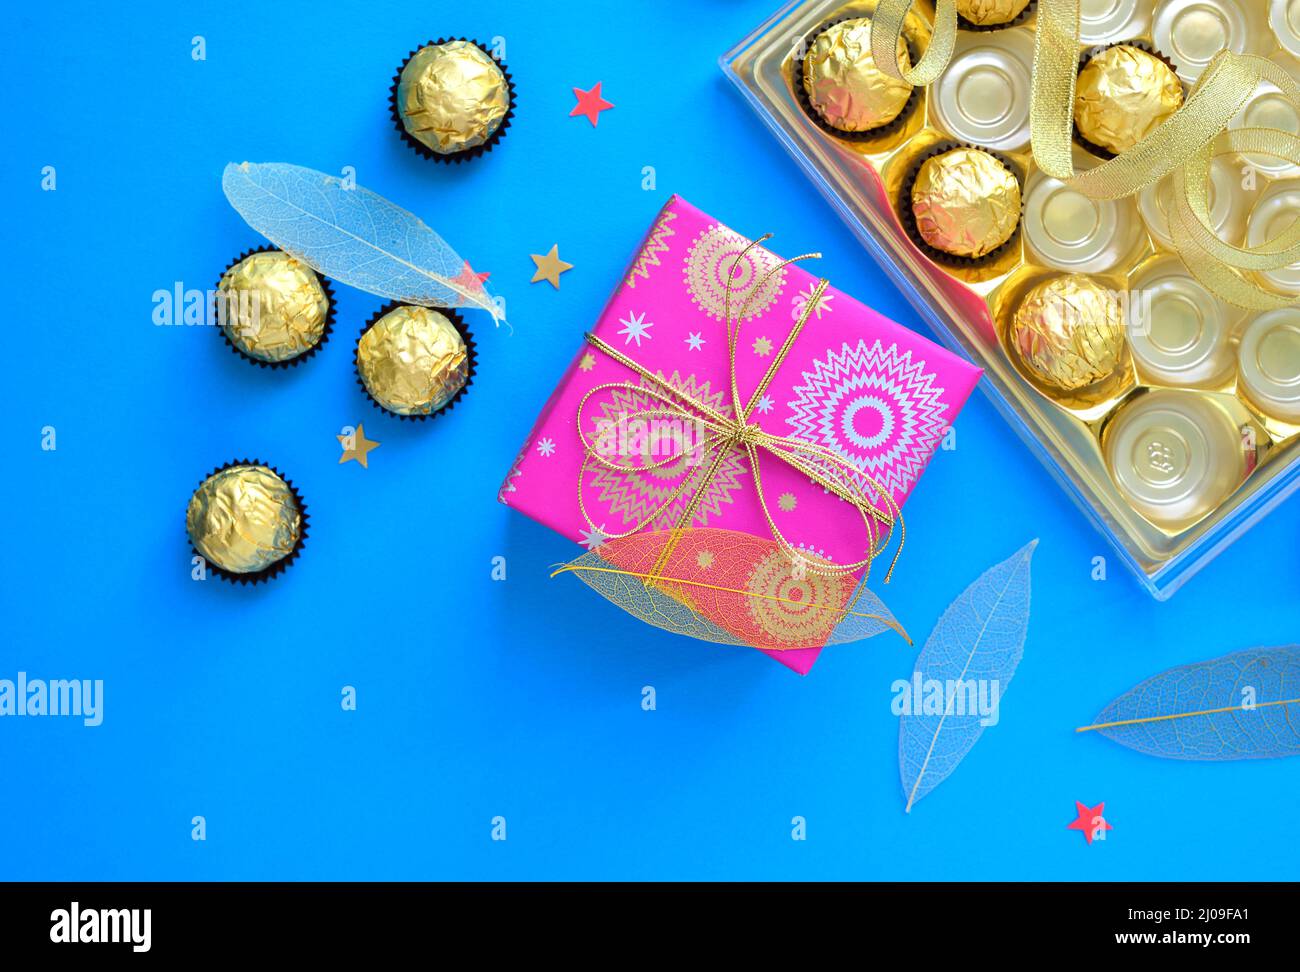 Schönes Foto von Schokolade und eine Geschenkbox mit Konfetti um. Draufsicht auf eine Schachtel mit Schokoladentablett und eine verpackte Geschenkbox. Stockfoto